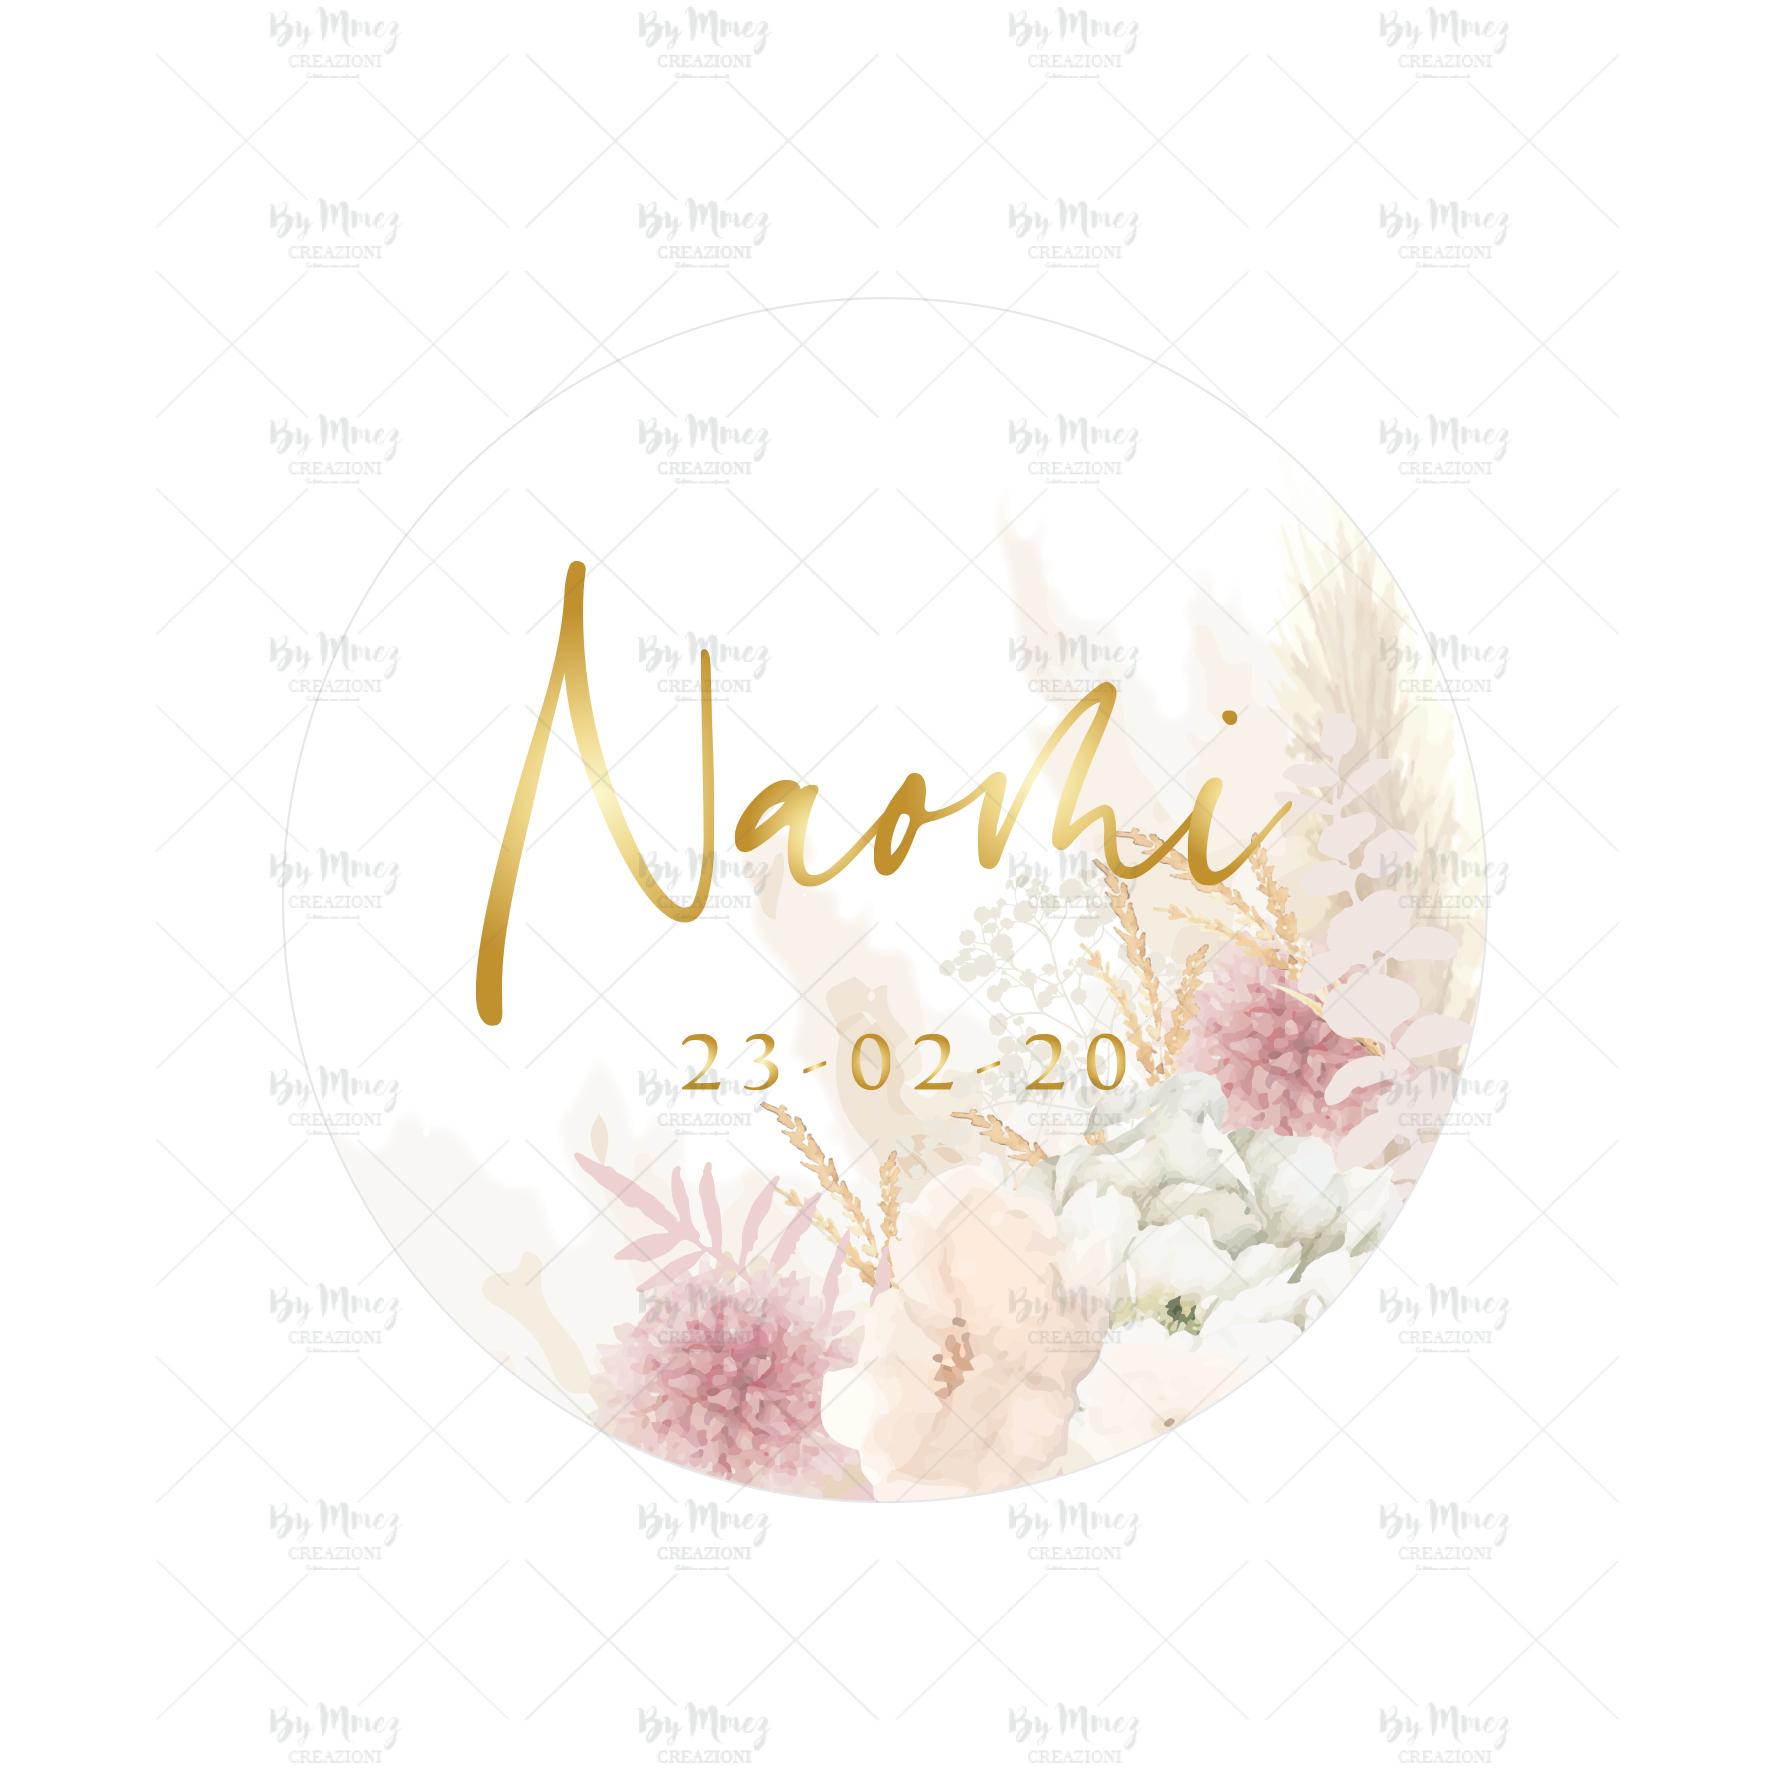 Personnalisé Rond Mariage Bridal Shower étiquettes autocollants-Tropical Hawaiian Fleurs